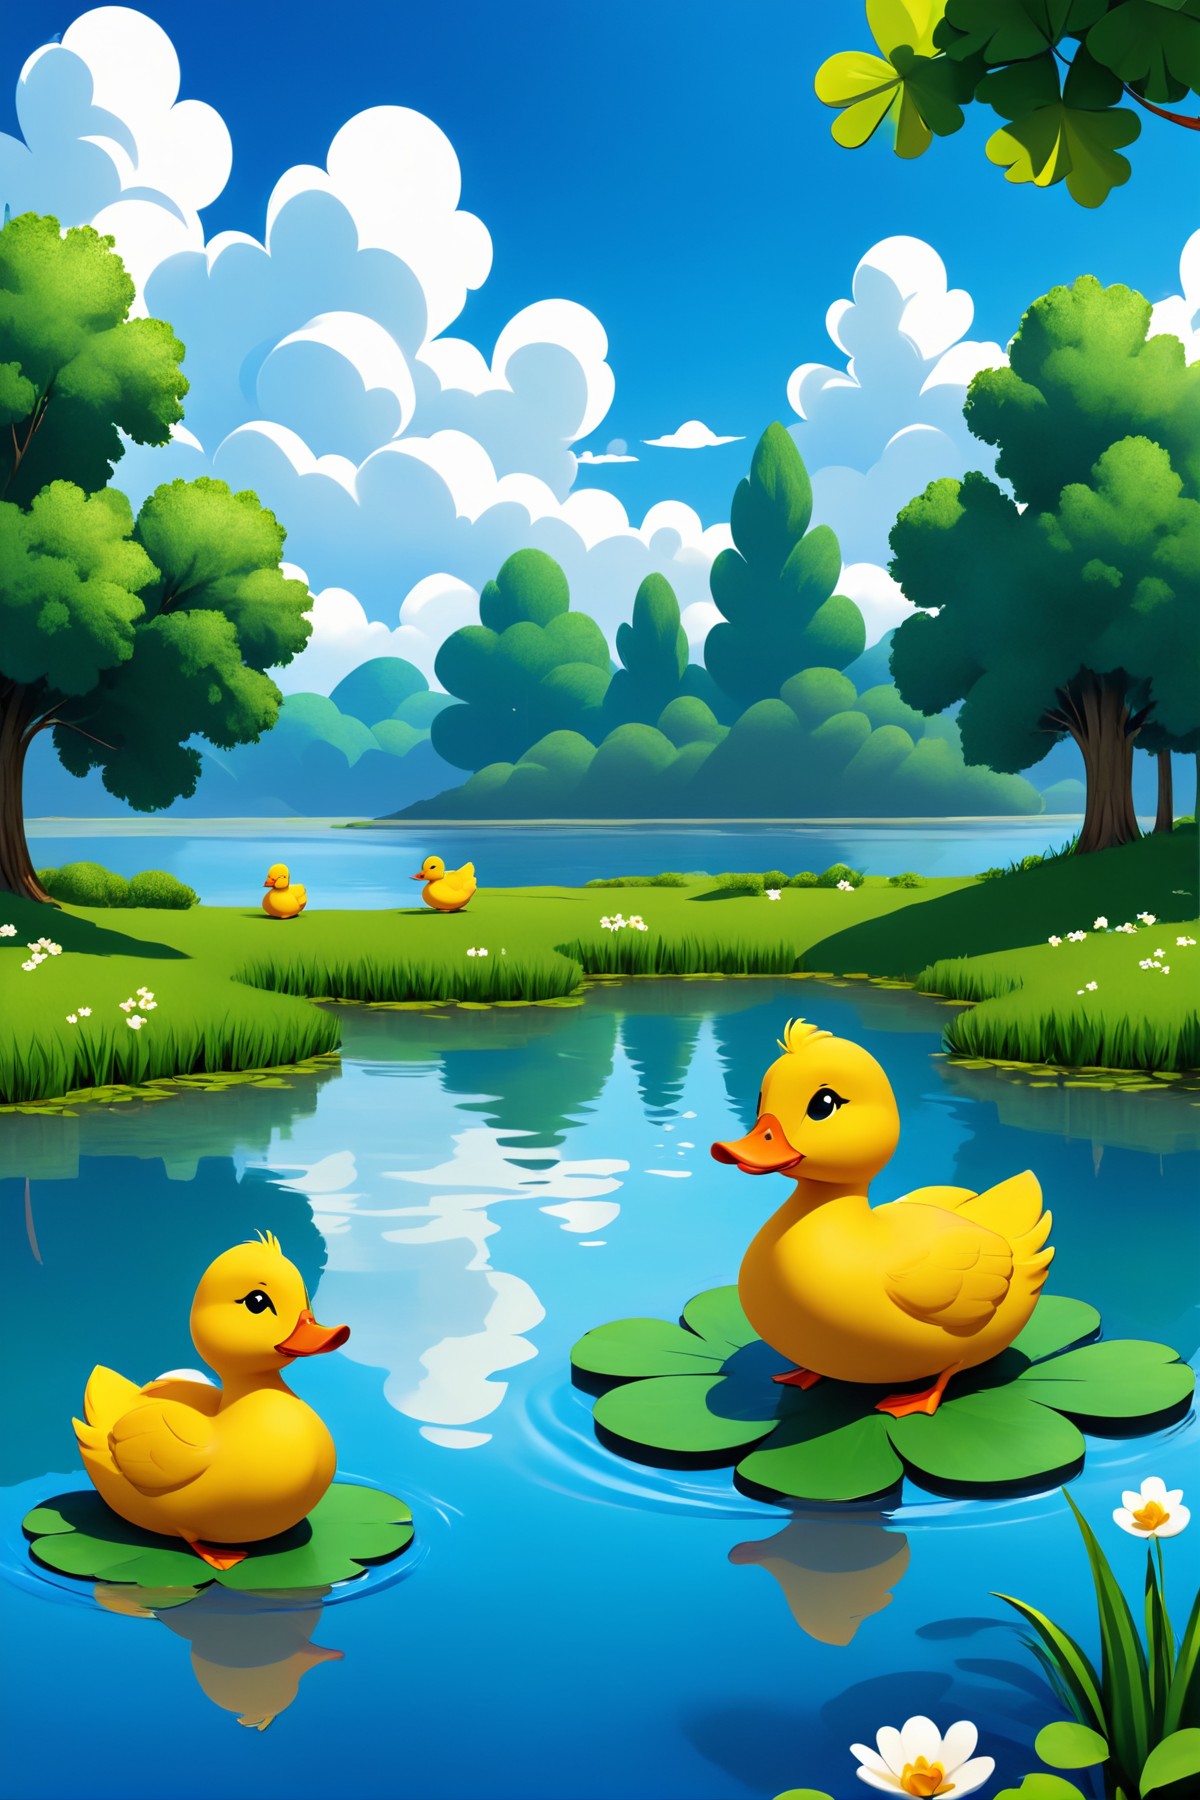 一群小鸭在形状像三叶草的池塘周围划水，在清澈的蓝天下，蓬松的云彩倒映在水中插图